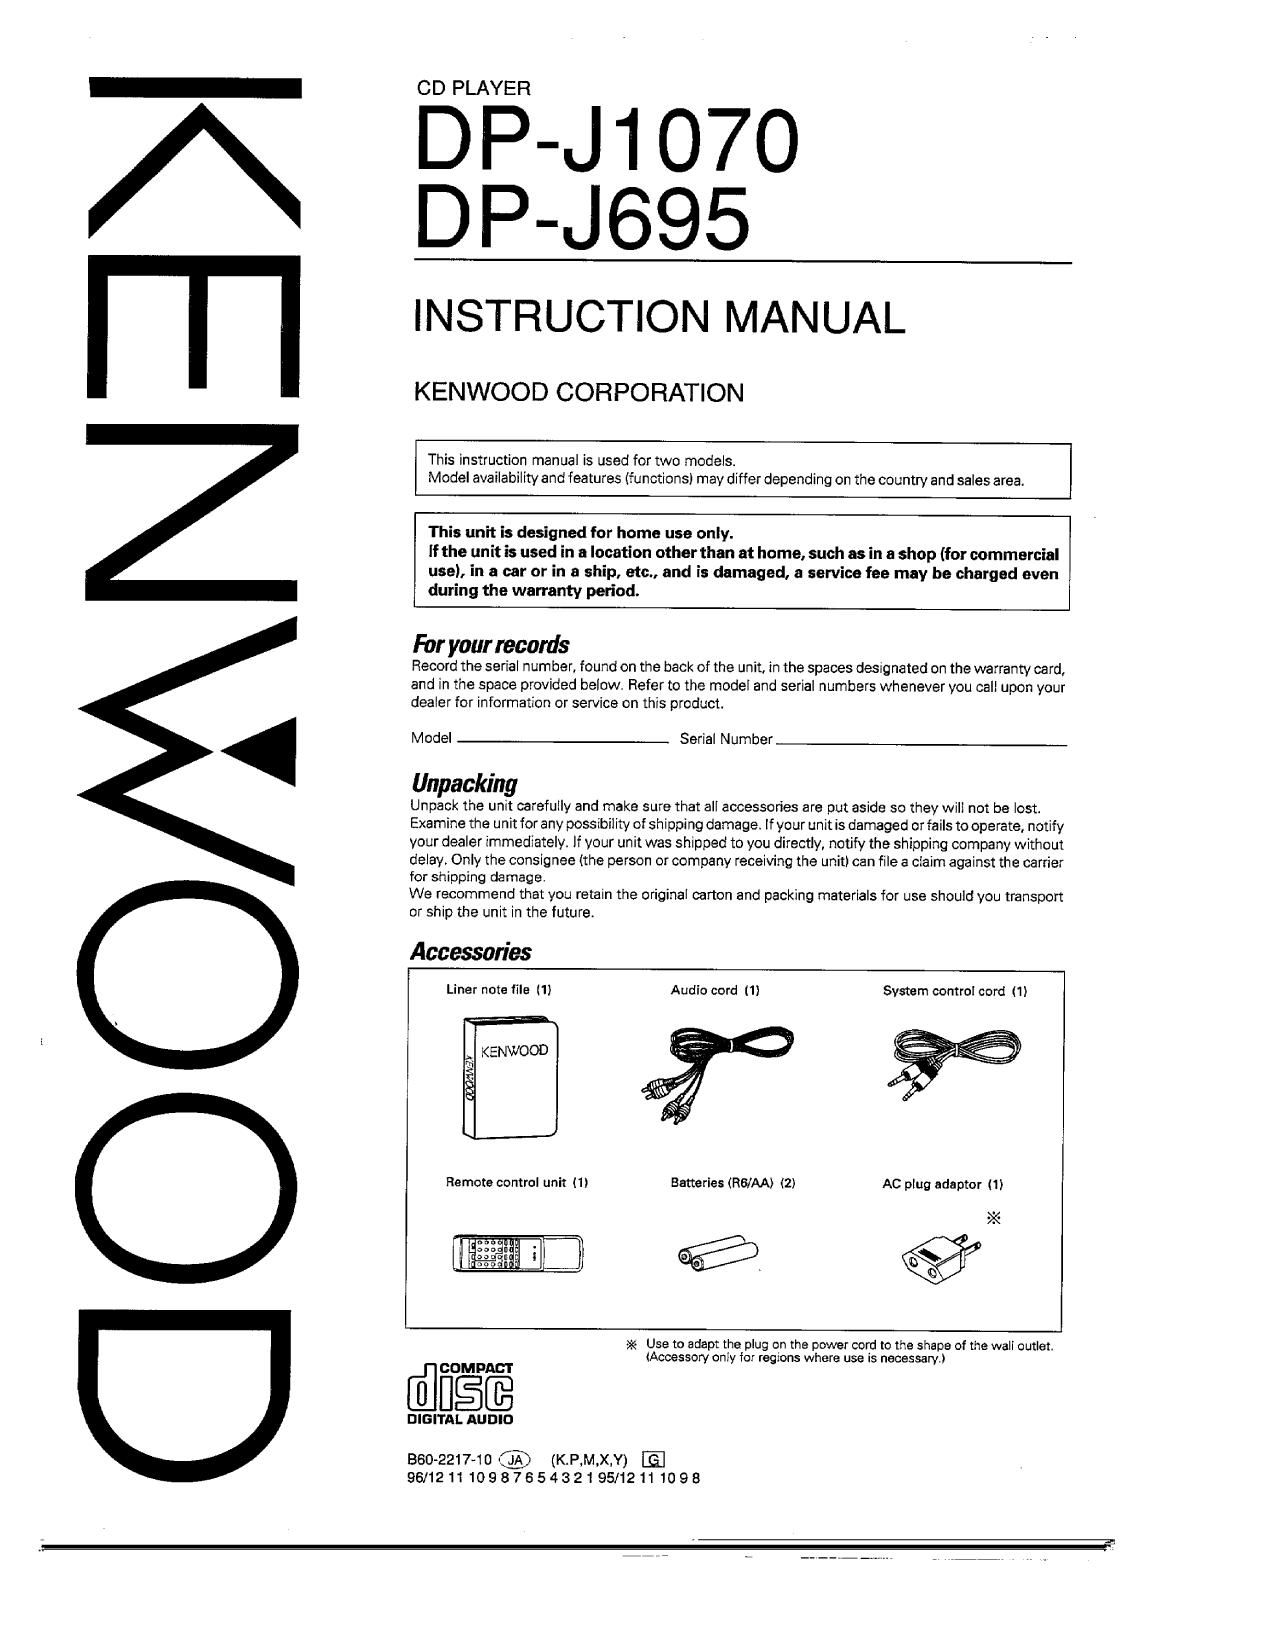 Kenwood DPJ 695 Owners Manual